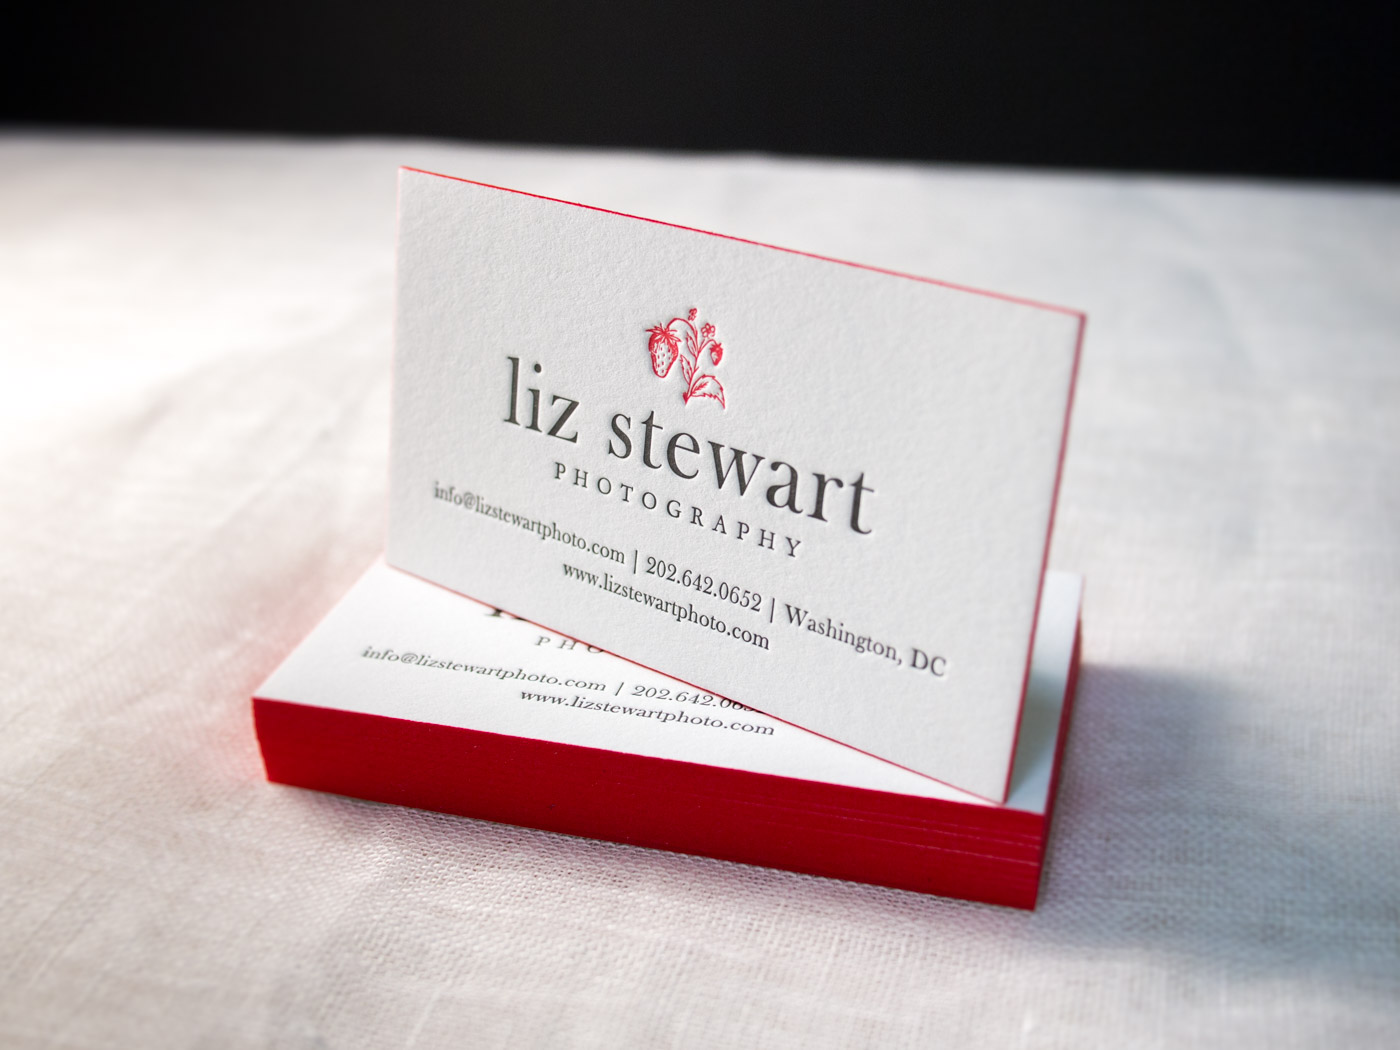 Liz Stewart | Printed by Parklife Press